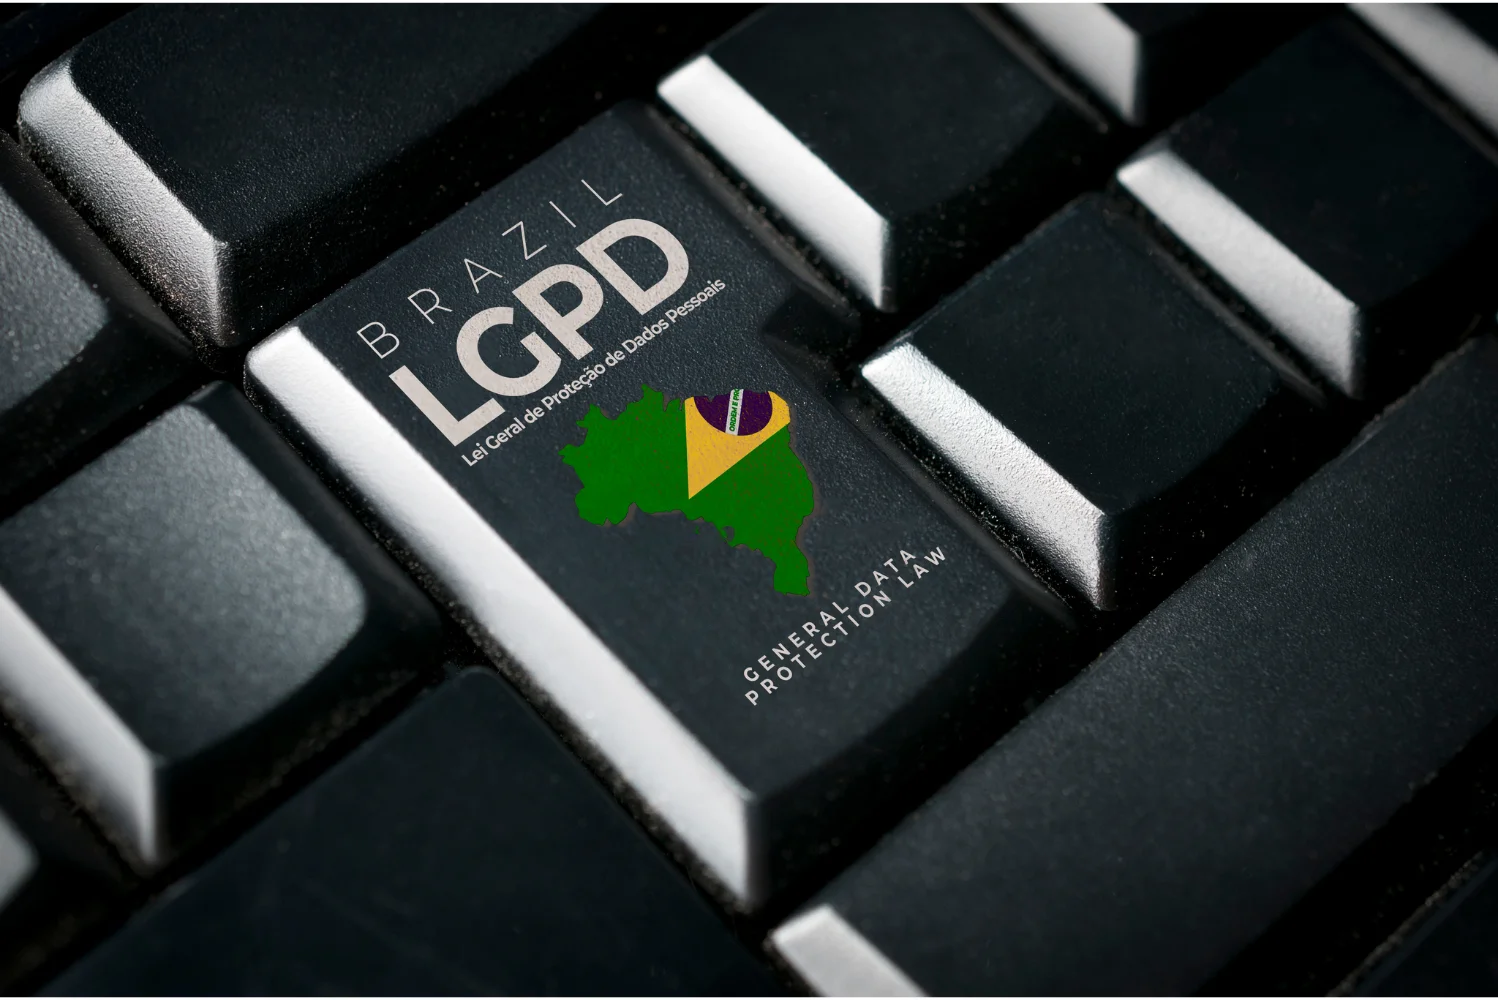 LGPD - Lei Geral de Proteção de Dados